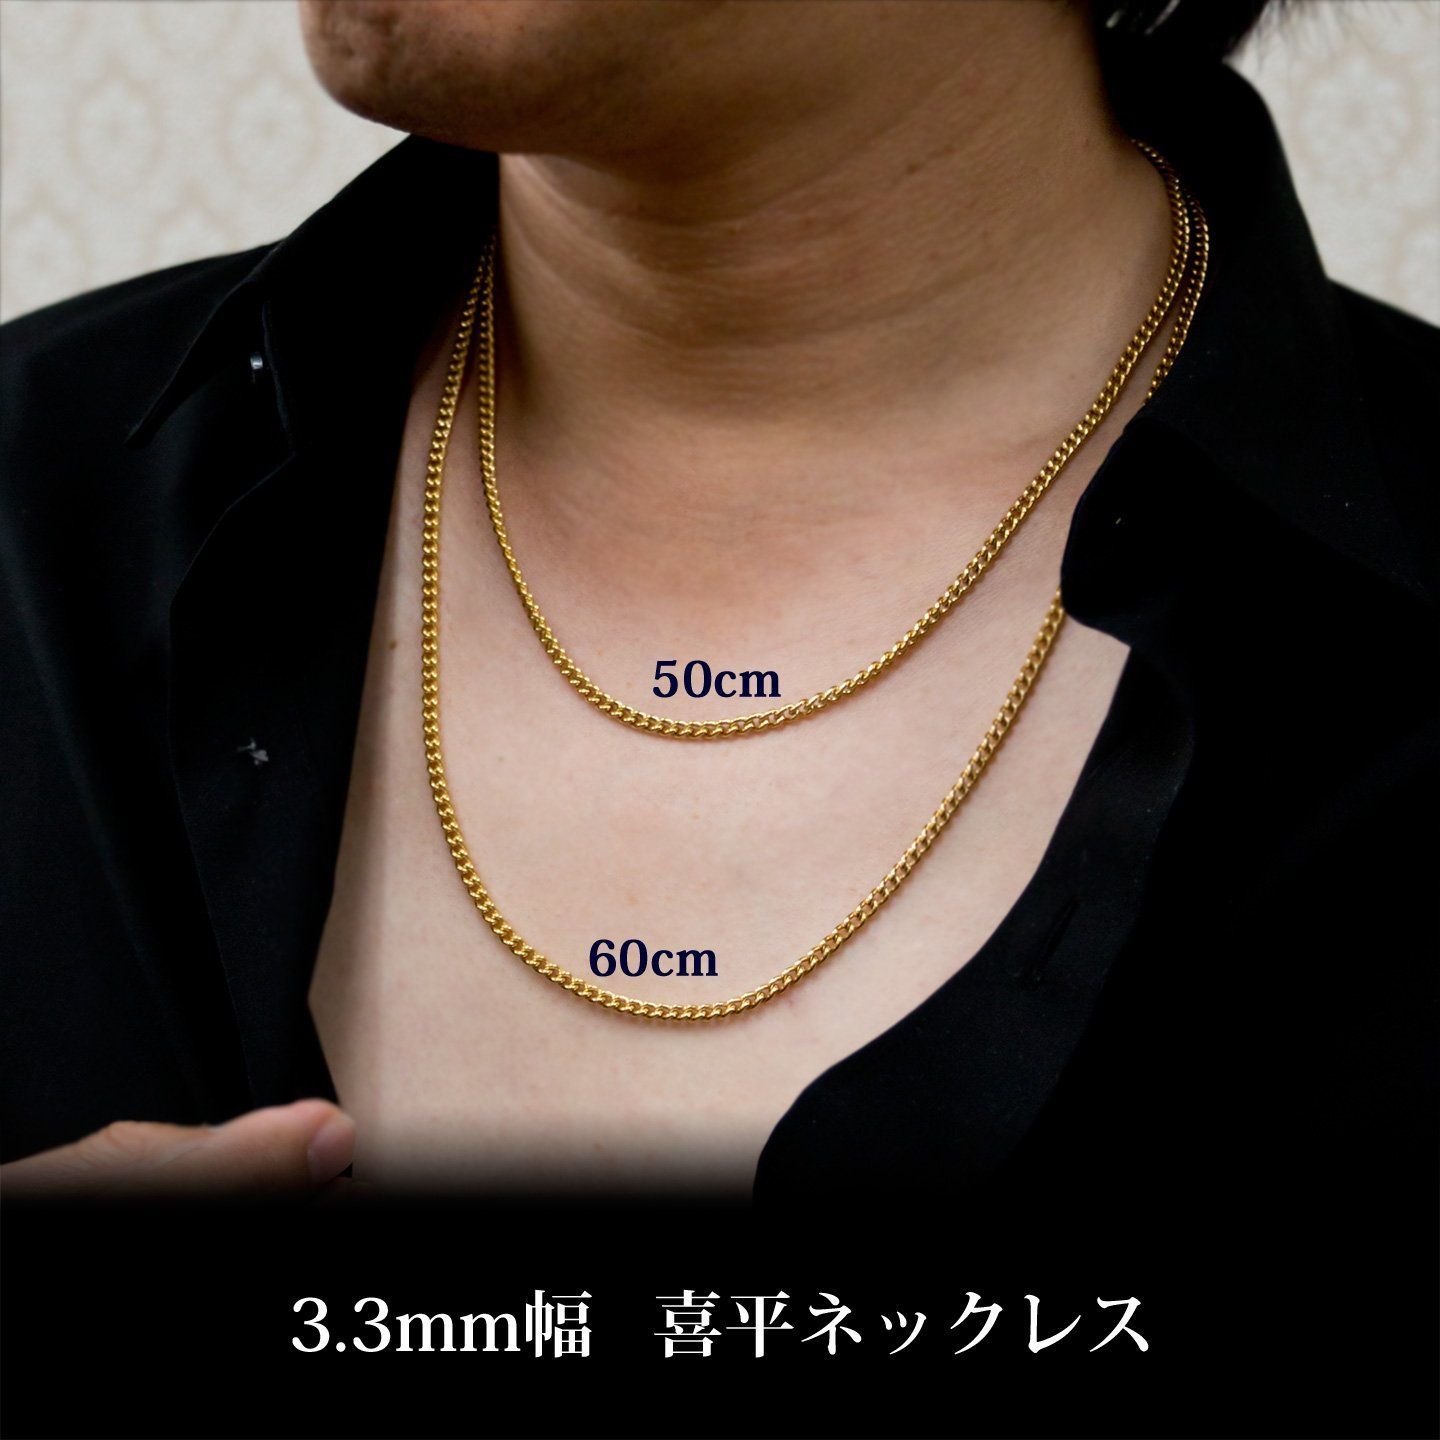 【新着商品】チタン 喜平ネックレス 50cm チェーン 3.3mm幅 ゴールド